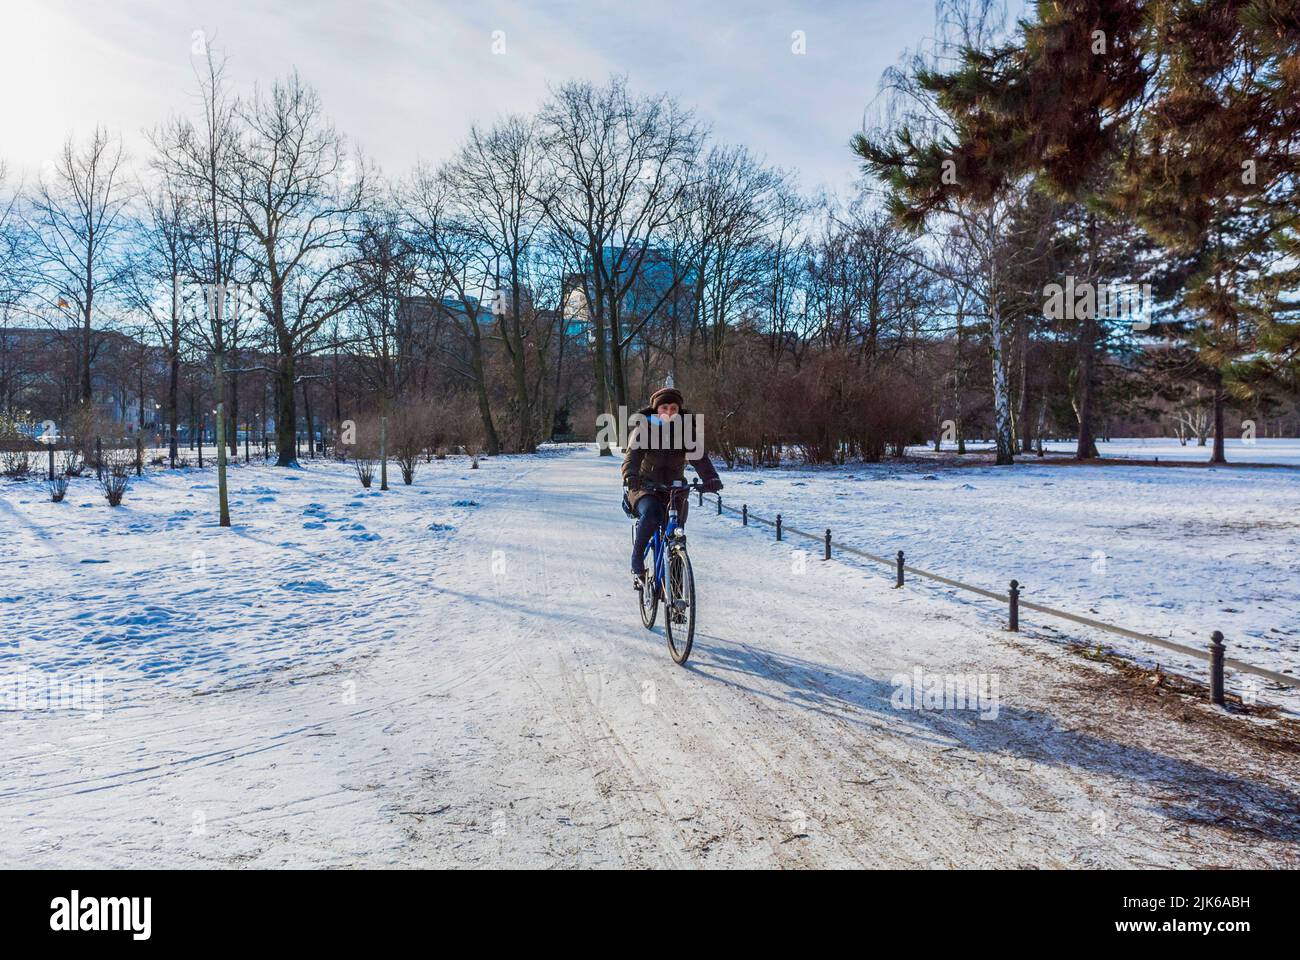 Berlín, Alemania, Hombre en bicicleta solo en escenas de parques públicos alemanes, Jardín de las tortugas en invierno con nieve Foto de stock